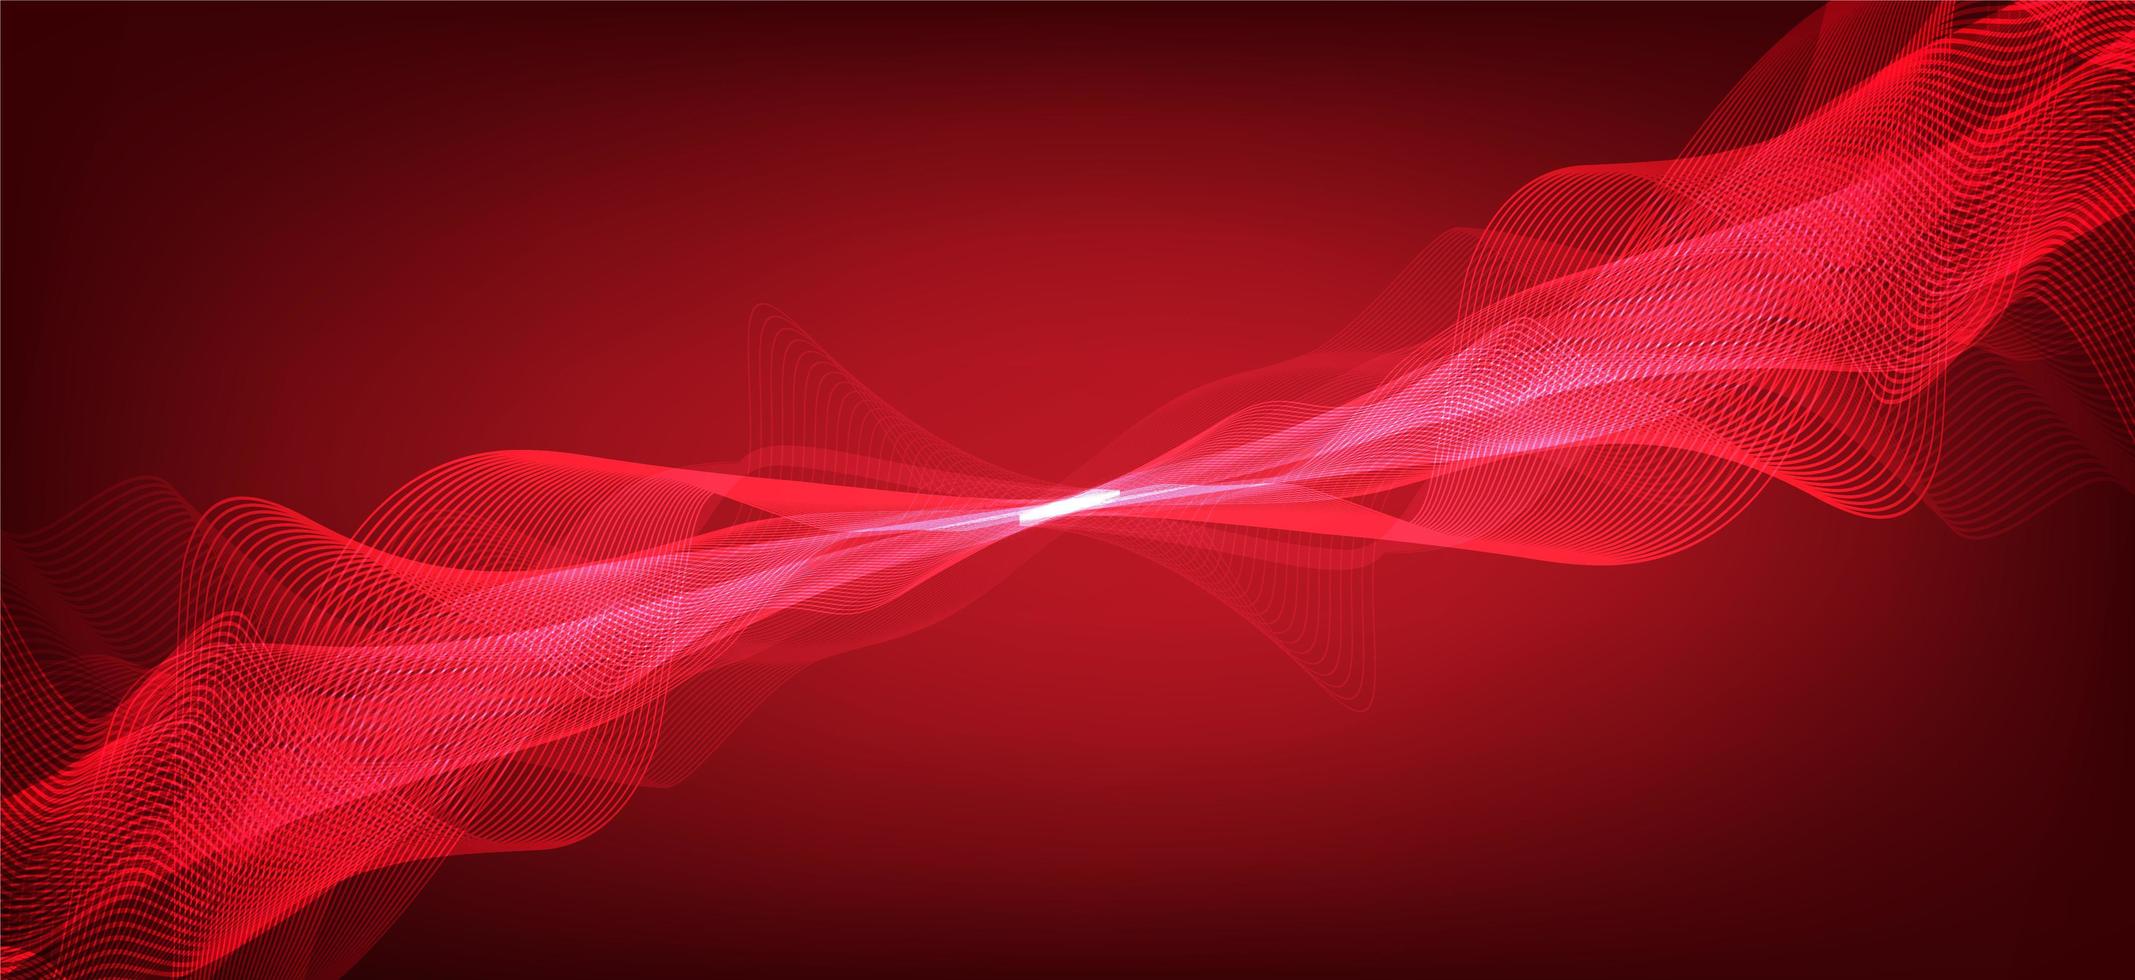 Fondo de escala de Richter bajo y alto de onda de sonido digital rojo sangre, diagrama de onda de tecnología y terremoto y concepto de corazón en movimiento, diseño para estudio de música y ciencia, ilustración vectorial. vector